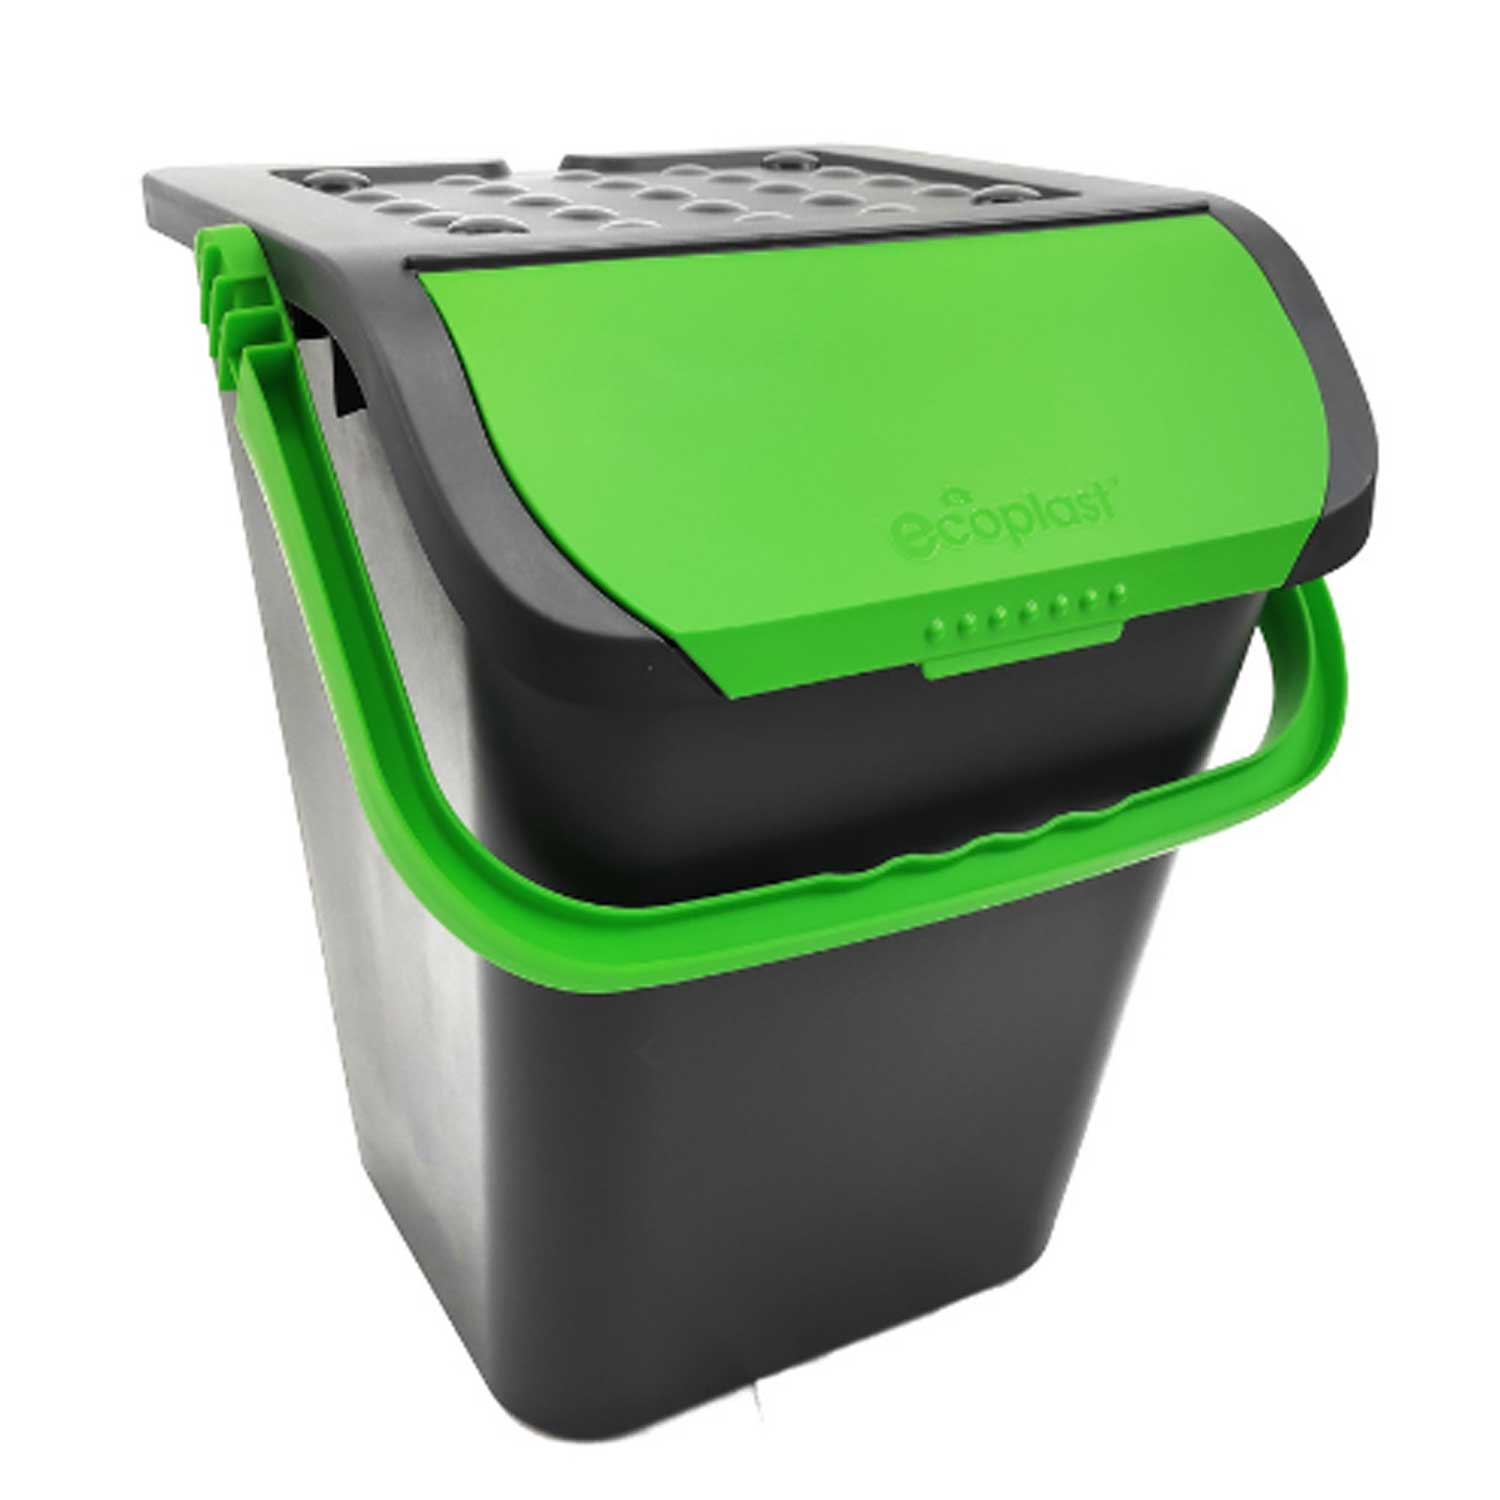 Ecoplast, pattumiera per raccolta differenziata, con doppia apertura 35l verde